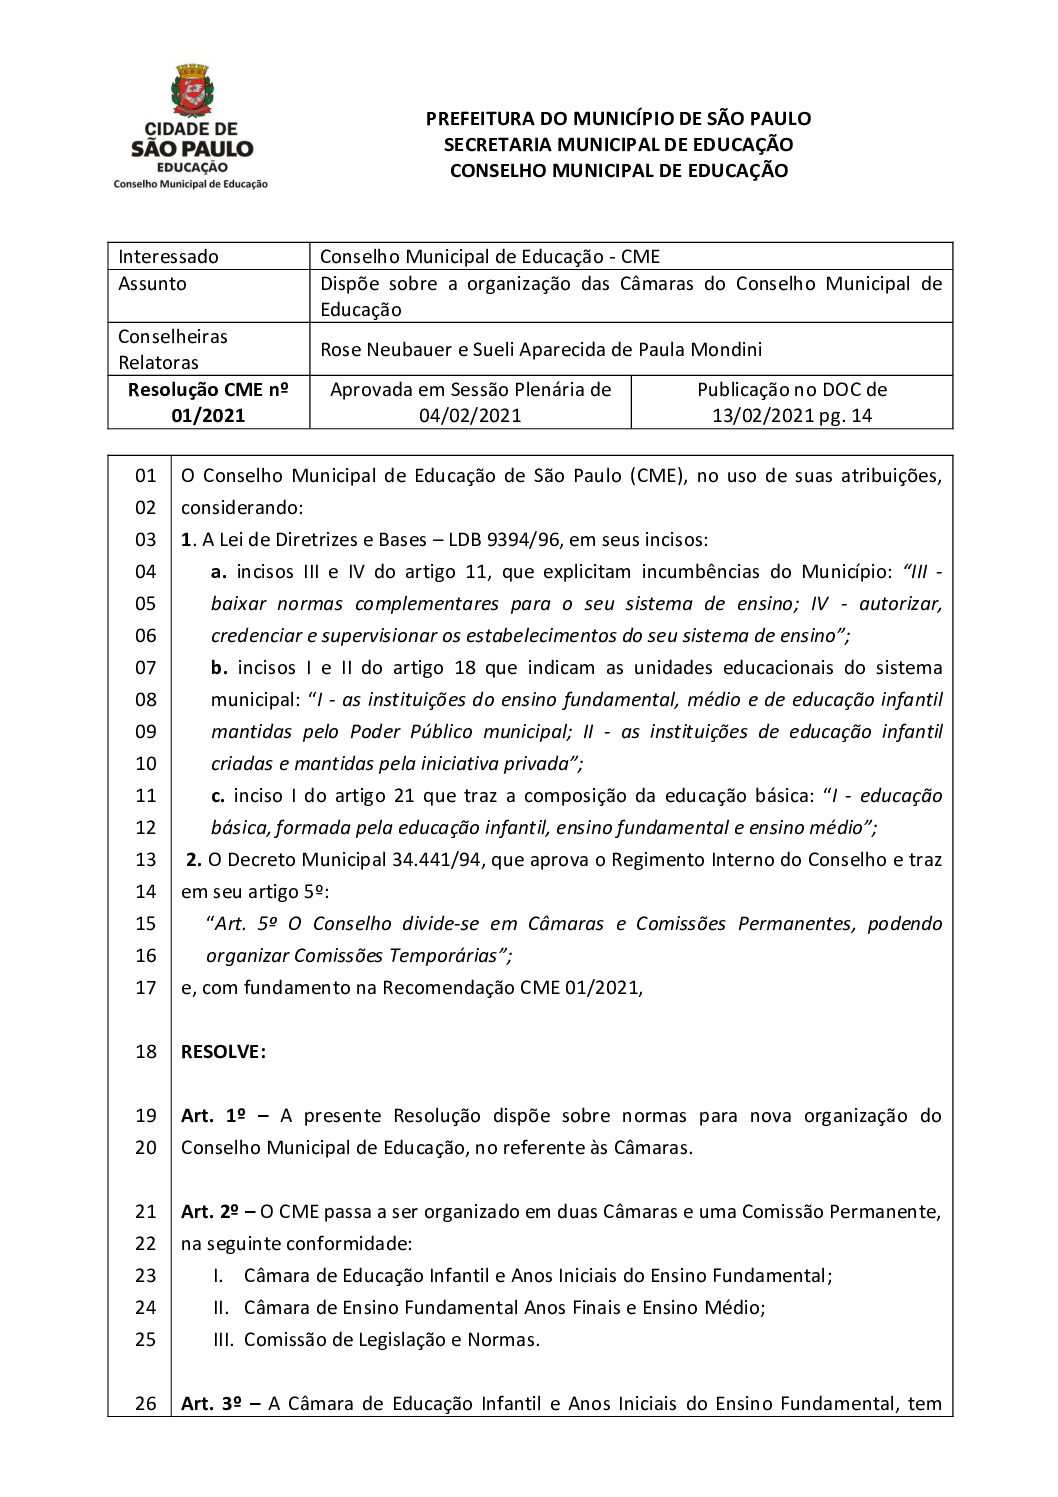 Resolução CME nº 01/2021 - Dispõe sobre a organização das Câmaras do Conselho Municipal de Educação 